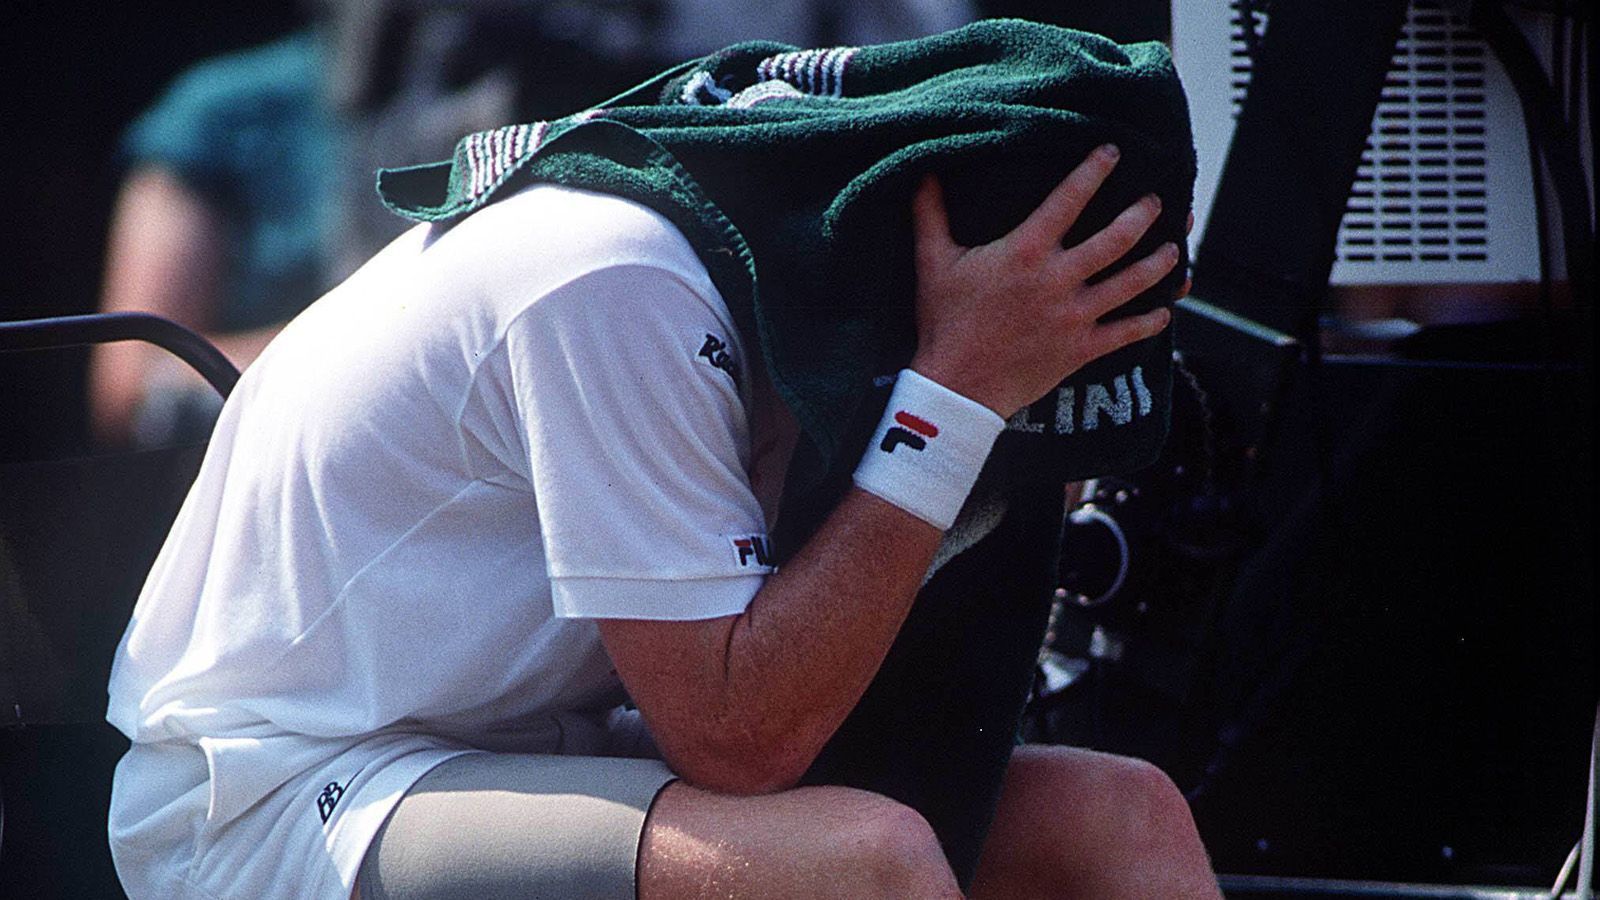 
                <strong>Karriere-Ende im Jahre 1999</strong><br>
                Nachdem Becker im Jahre 1996 noch einmal überraschend die Australian Open gewann, ging es mit seiner sportlichen Karriere bergab. Er beendete seine Laufbahn dort, wo er zum Superstar wurde. Nach seiner Achtelfinal-Niederlage in Wimbledon gegen den Australier Patrick Rafter erklärte er im Juni 1999: "Das war mein letztes Match."
              